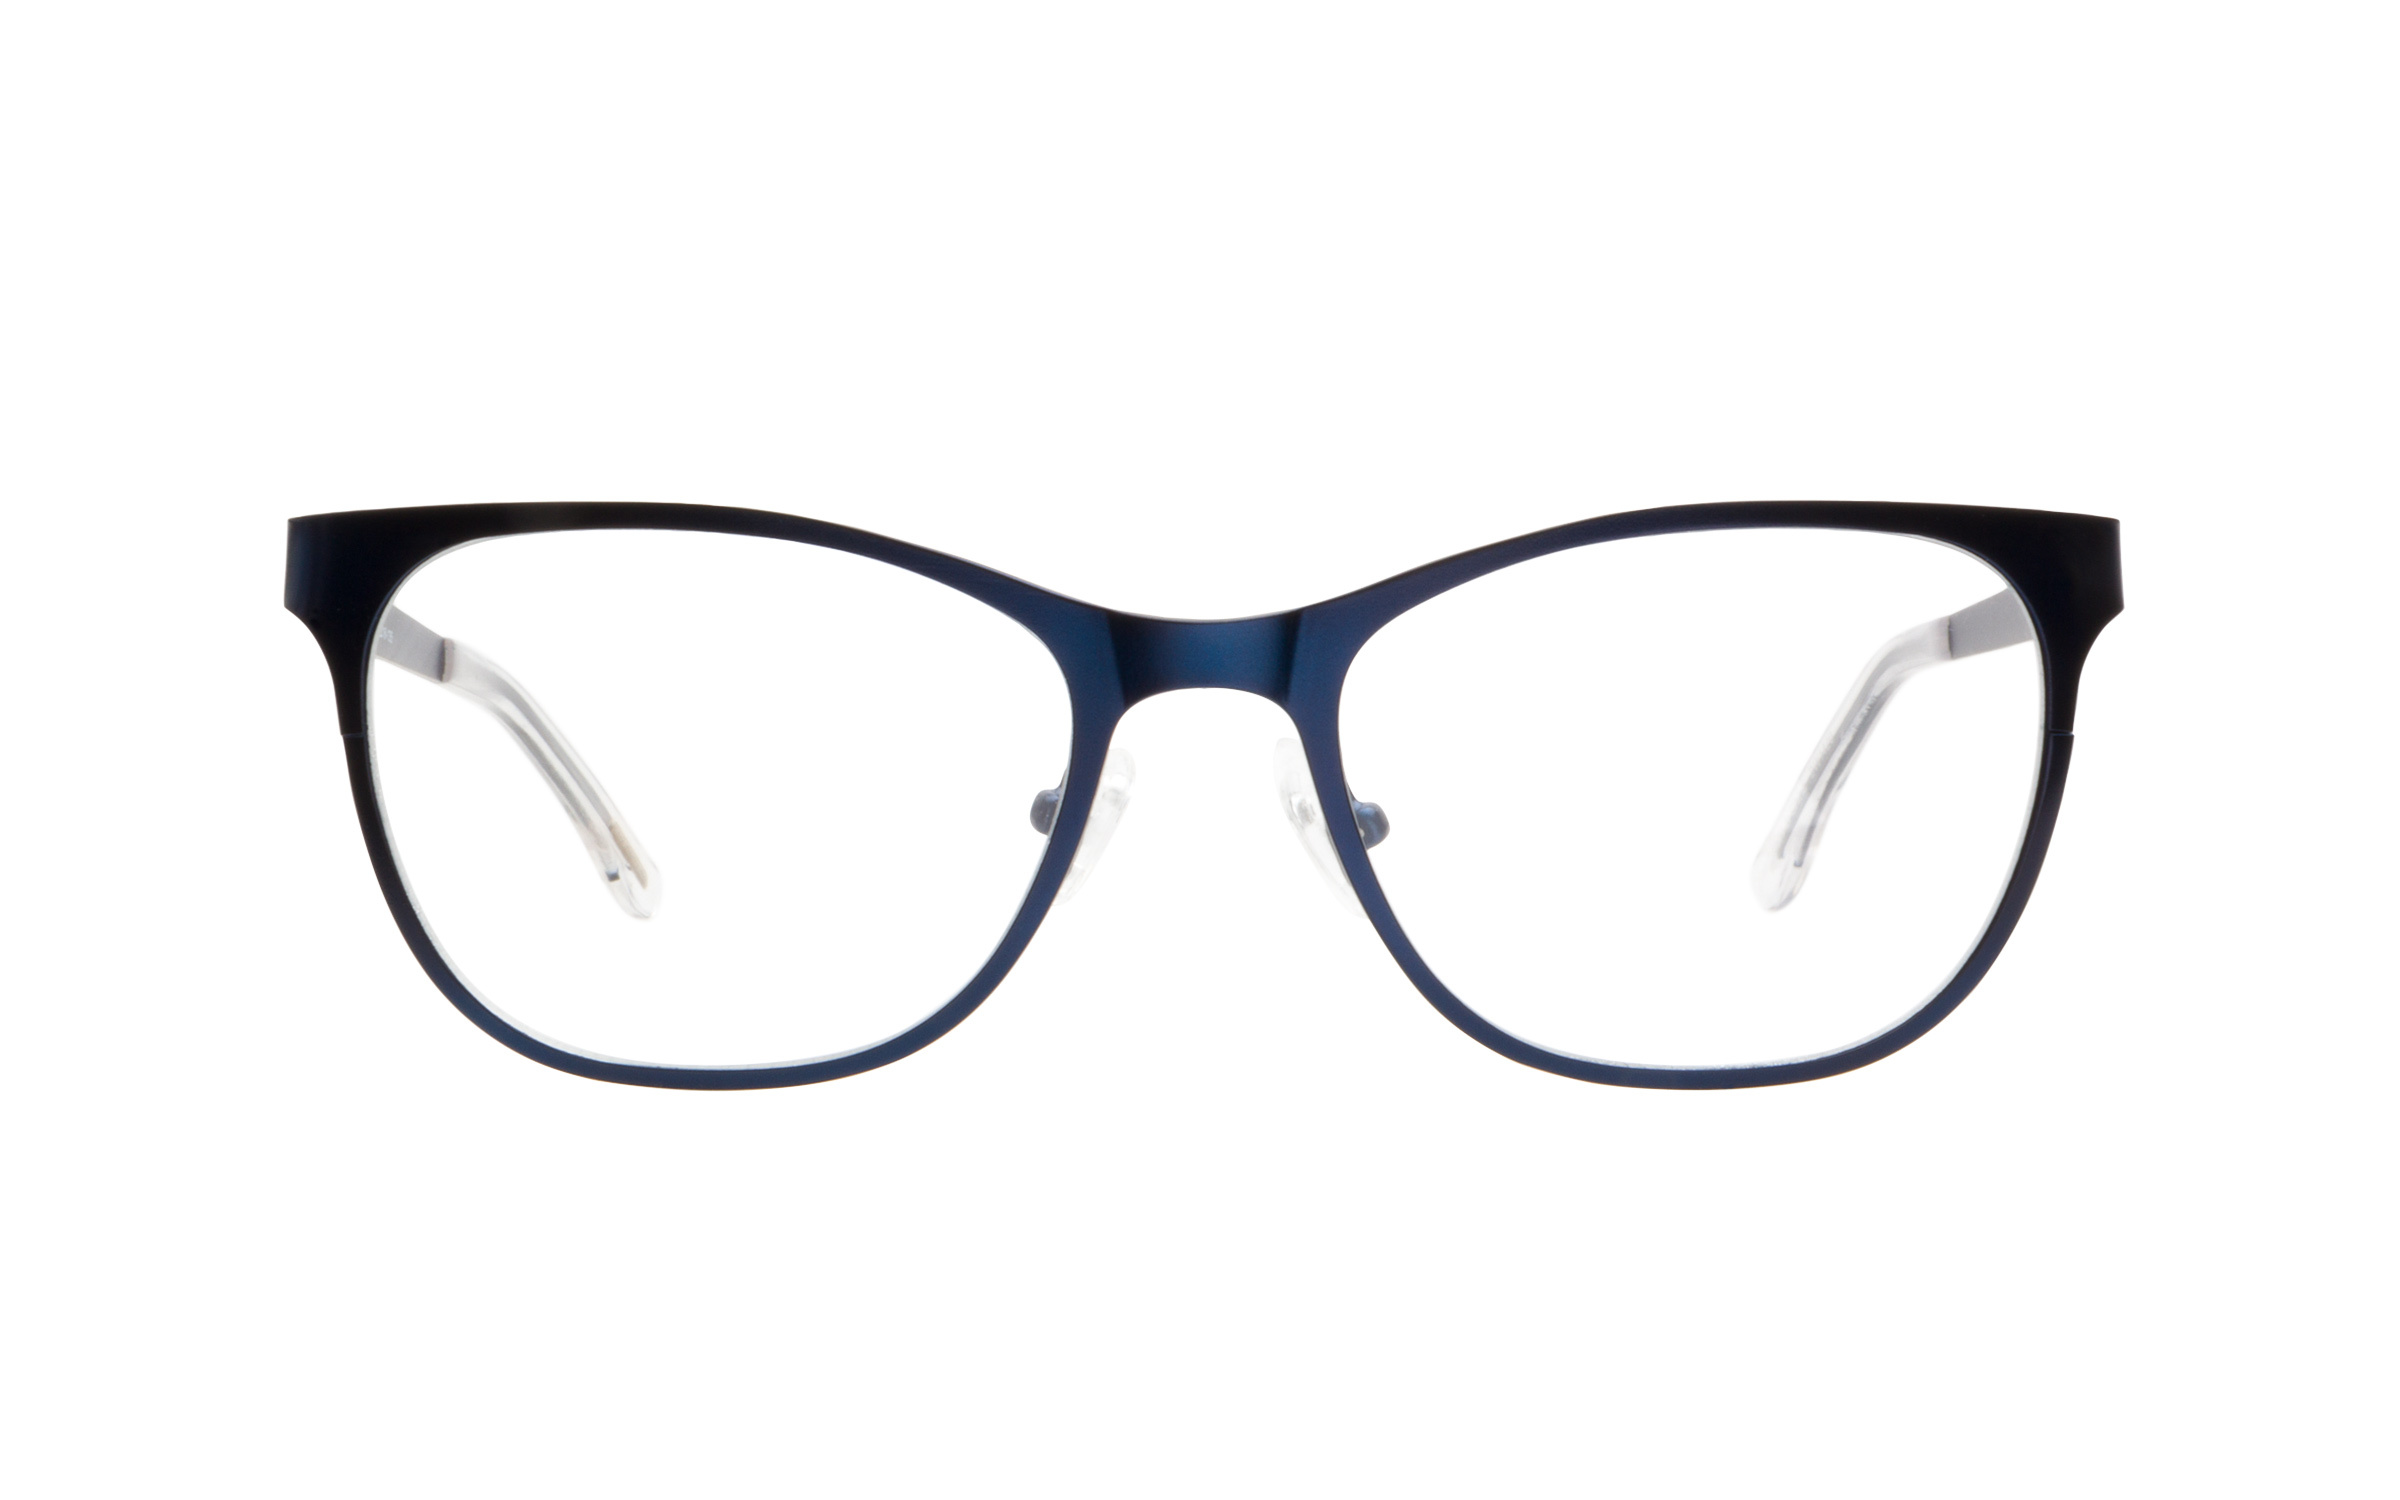 Kam Dhillon 3076 Chloe Eyeglasses and Frame in Blue - Online Coastal